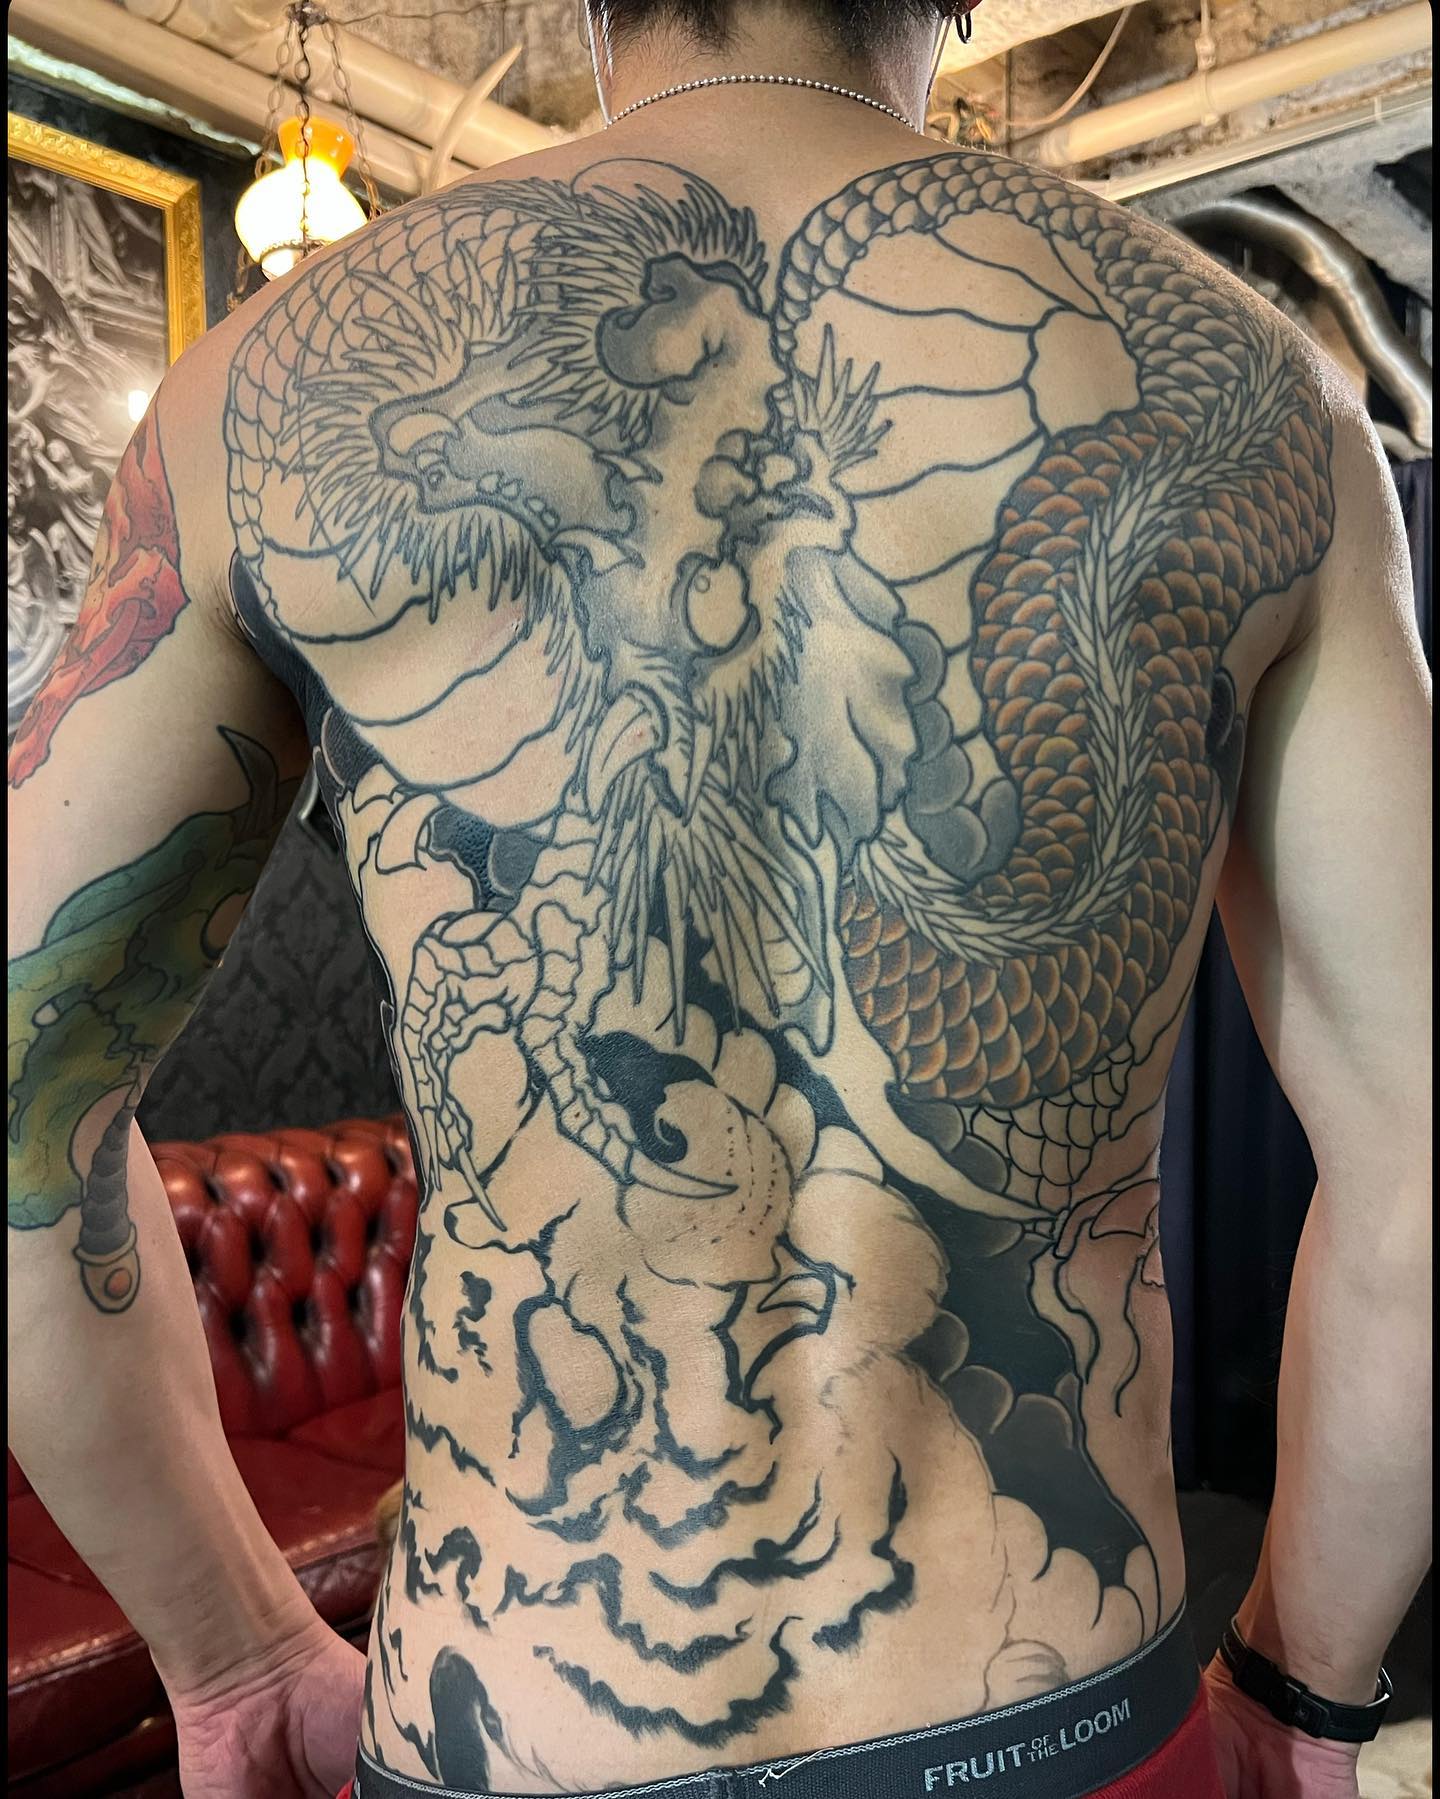 背中 続きin progress#backpiece #freehand #Japanesetattoo #tattoo #ink #tokyo #horimasa#フリーハンド #ジャパニーズタトゥー #タトゥー #インク #スミ #イレズミ #ホリマサ #トウキョウ #刺青 #墨 #彫雅 #東京 #56 #56tattoo